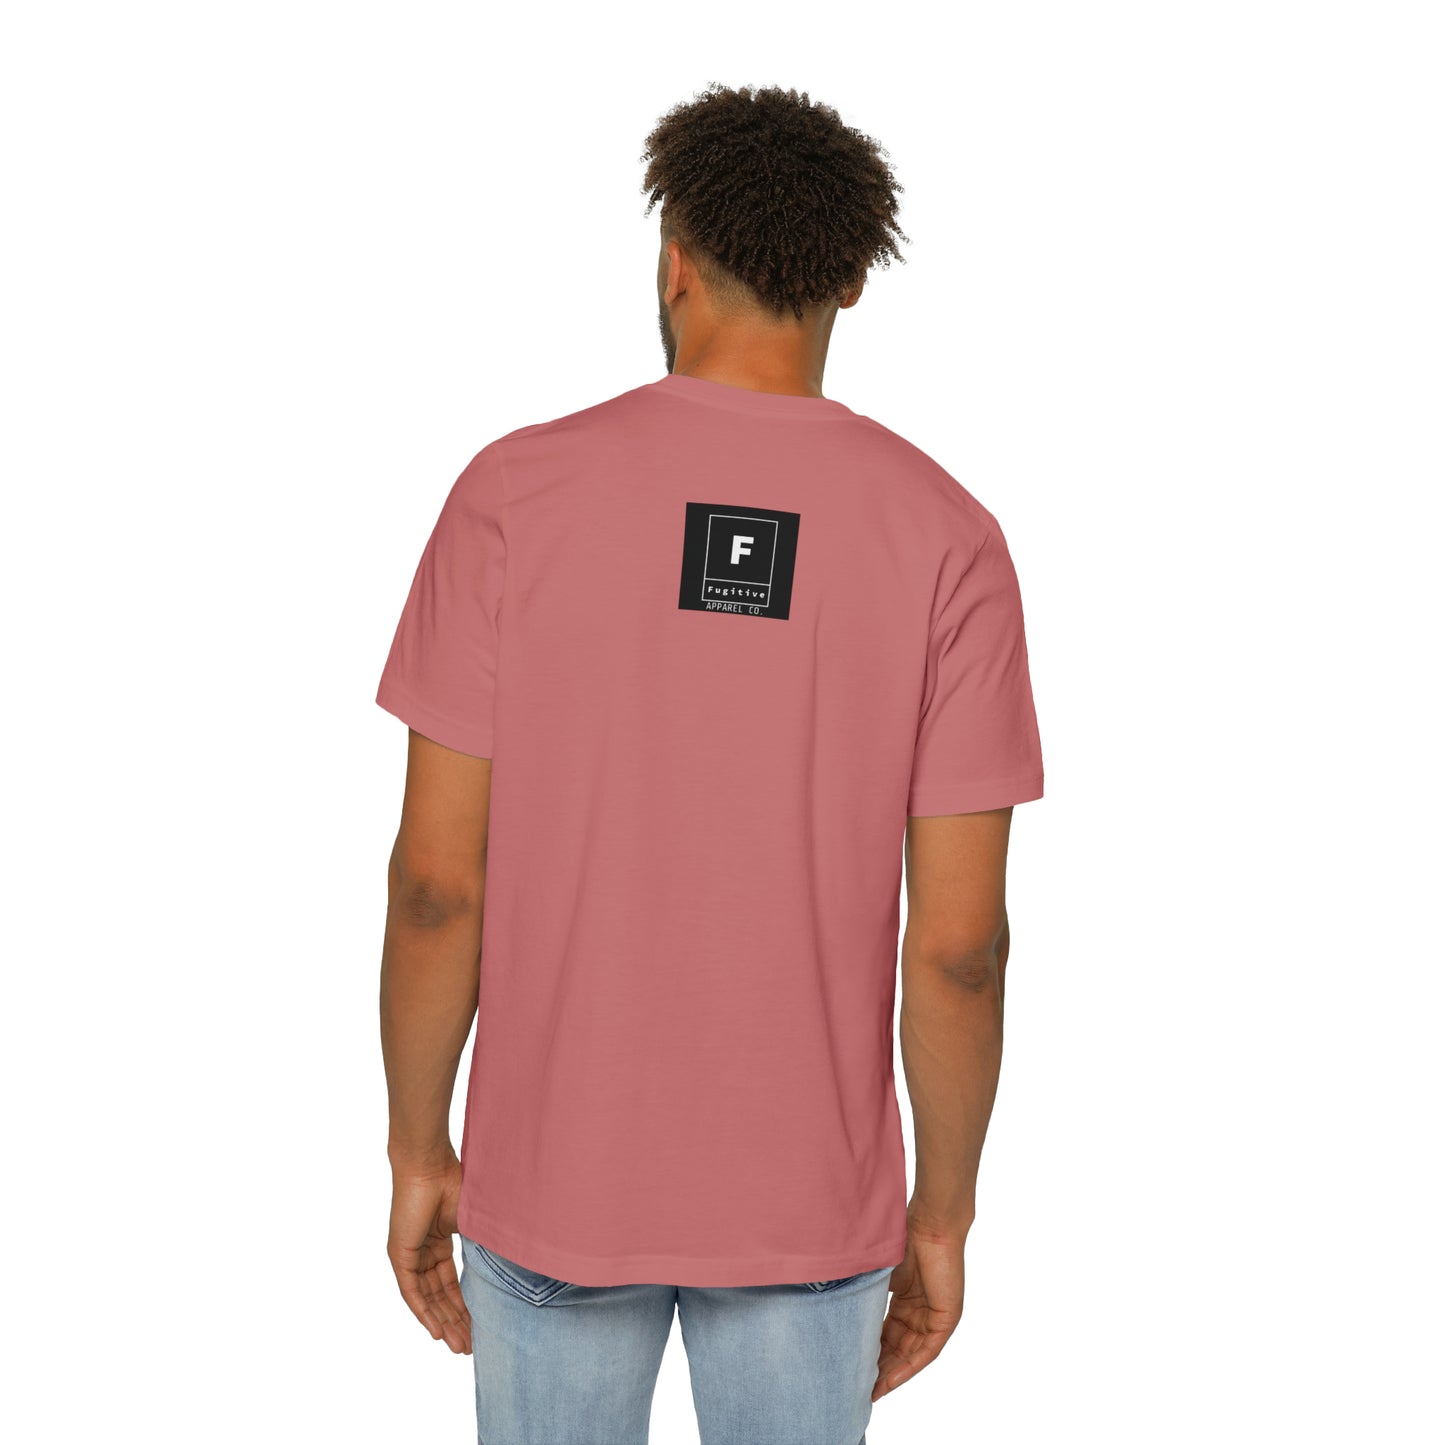 USA-Made Unisex Short-Sleeve Jersey T-Shirt